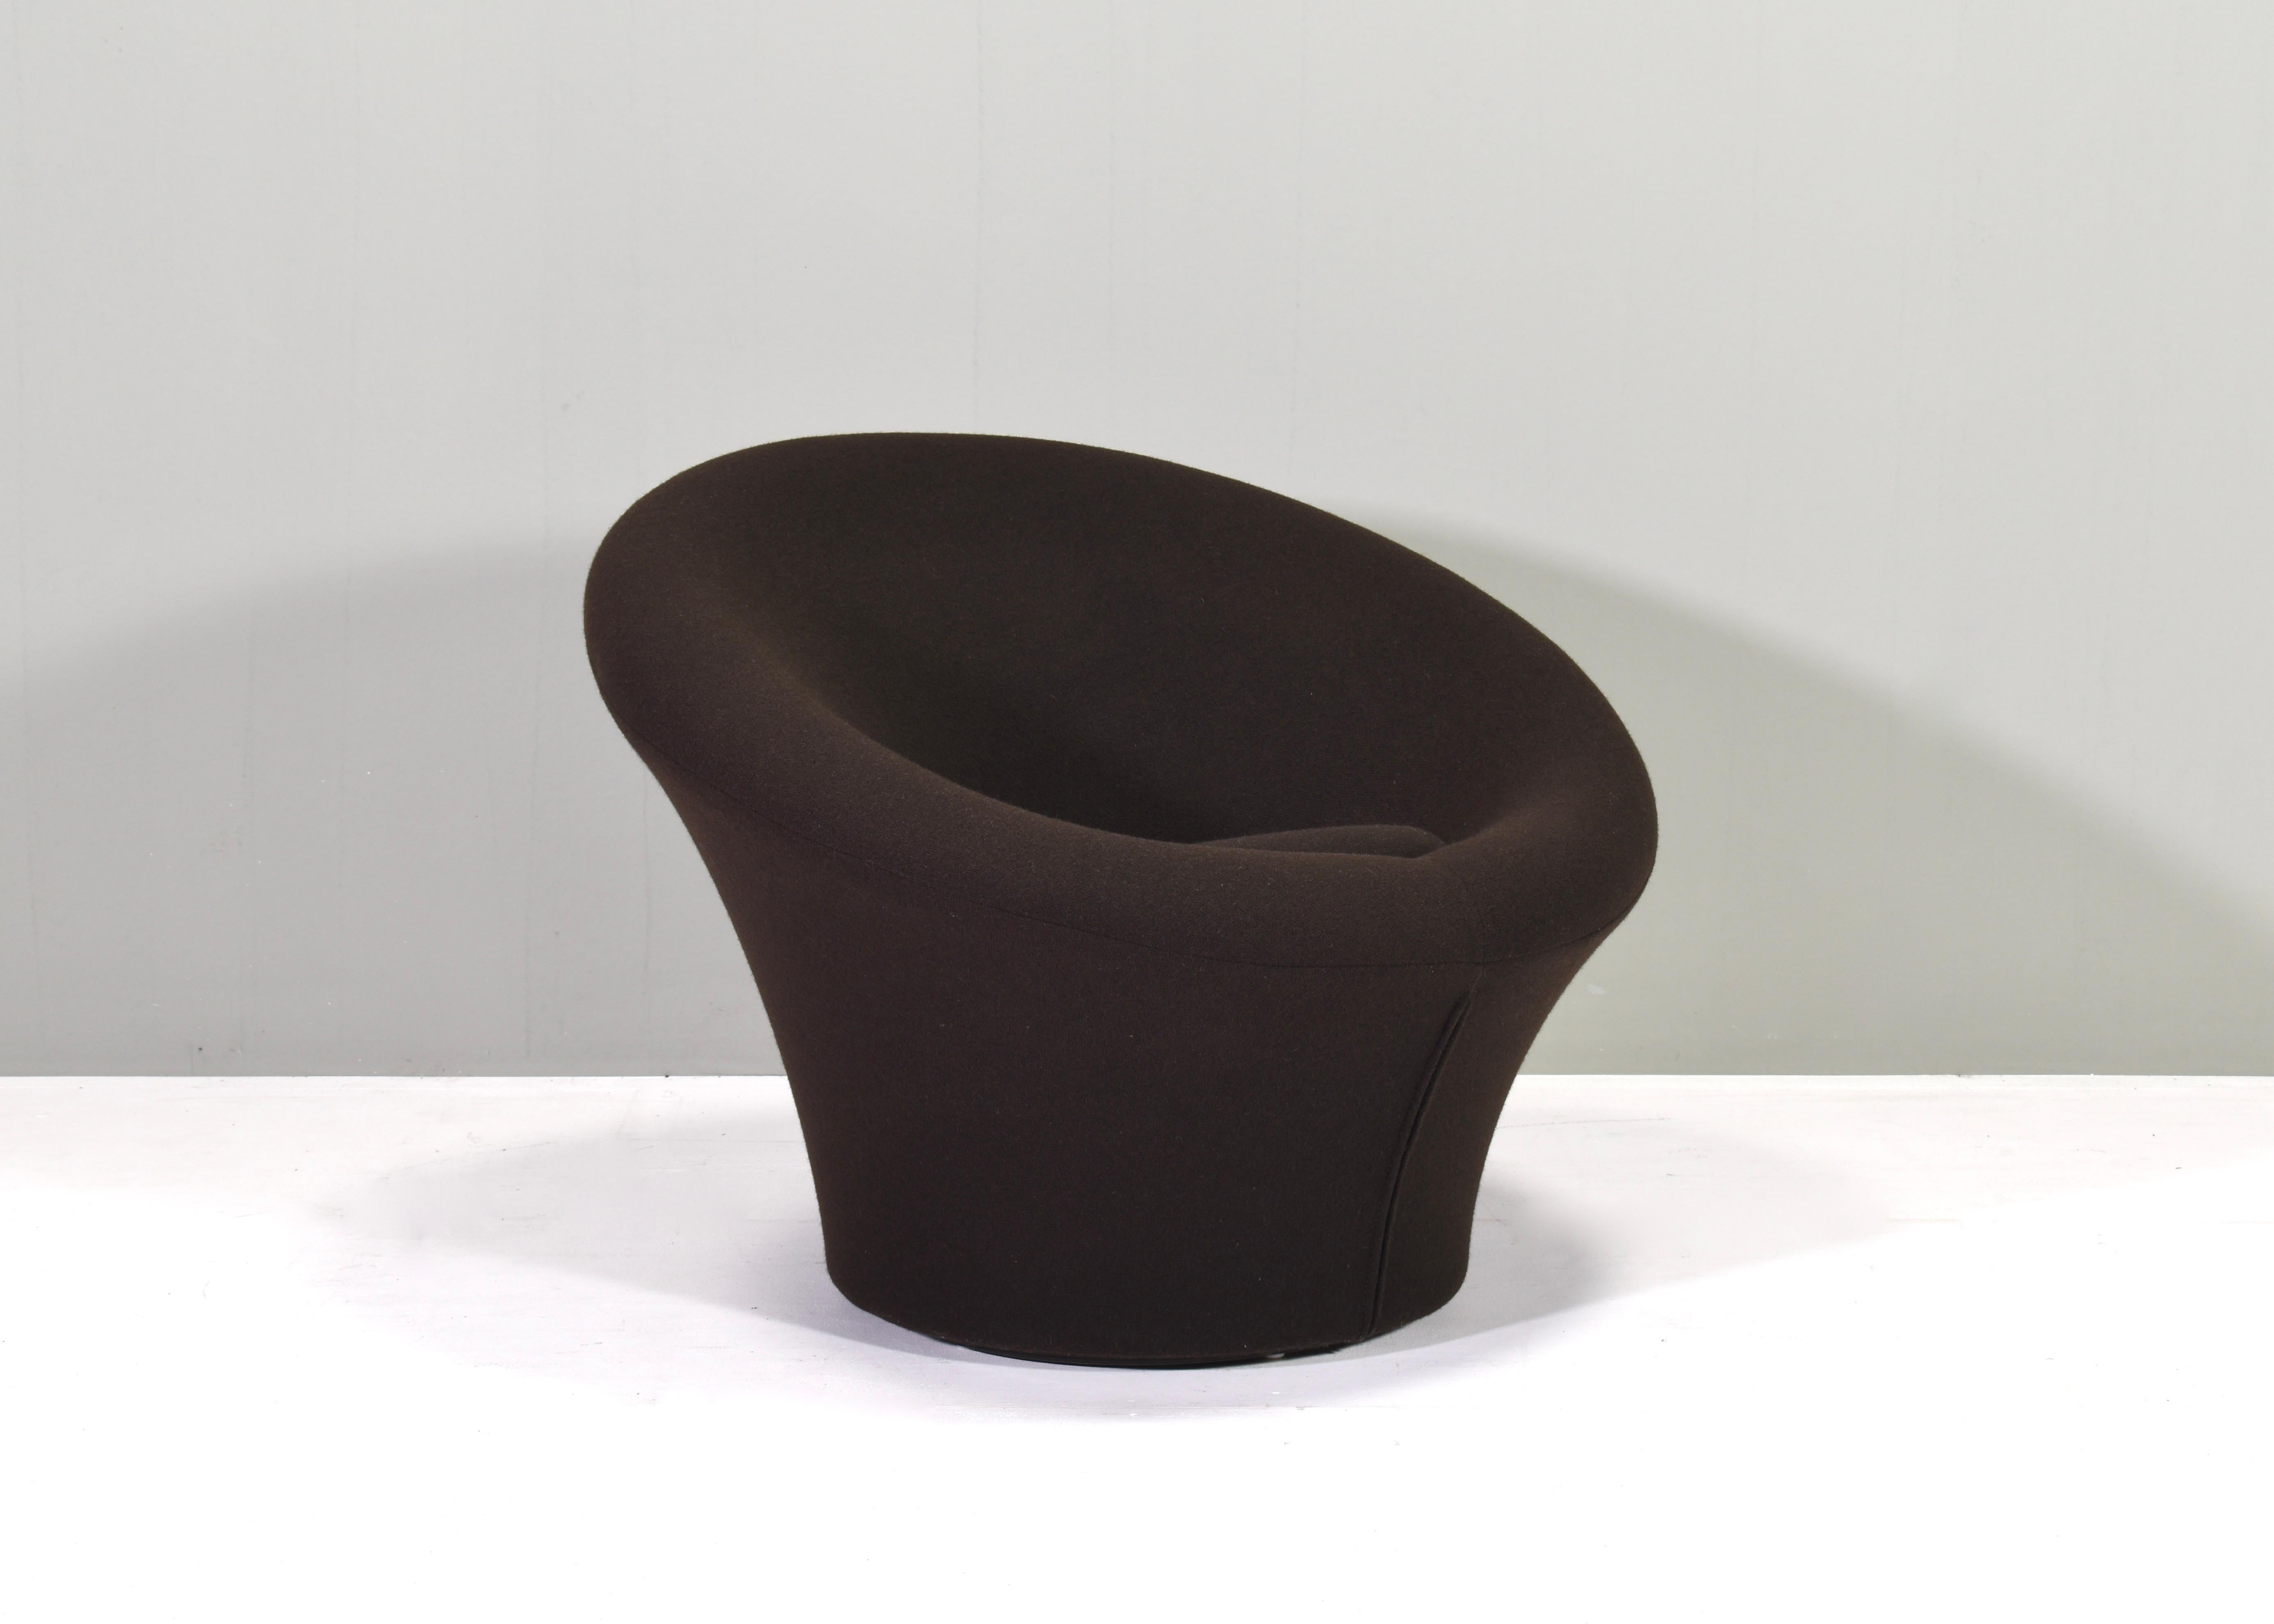 Pilzsessel f-560 von Pierre Paulin für Artifort, Niederlande - um 1970.
Der Stuhl ist mit einem sehr dunkelbraunen (fast schwarzen) Wollstoff von Kvadrat bezogen. Der Zustand des Stuhls ist original und ausgezeichnet.

Wir haben auch eine Ottomane